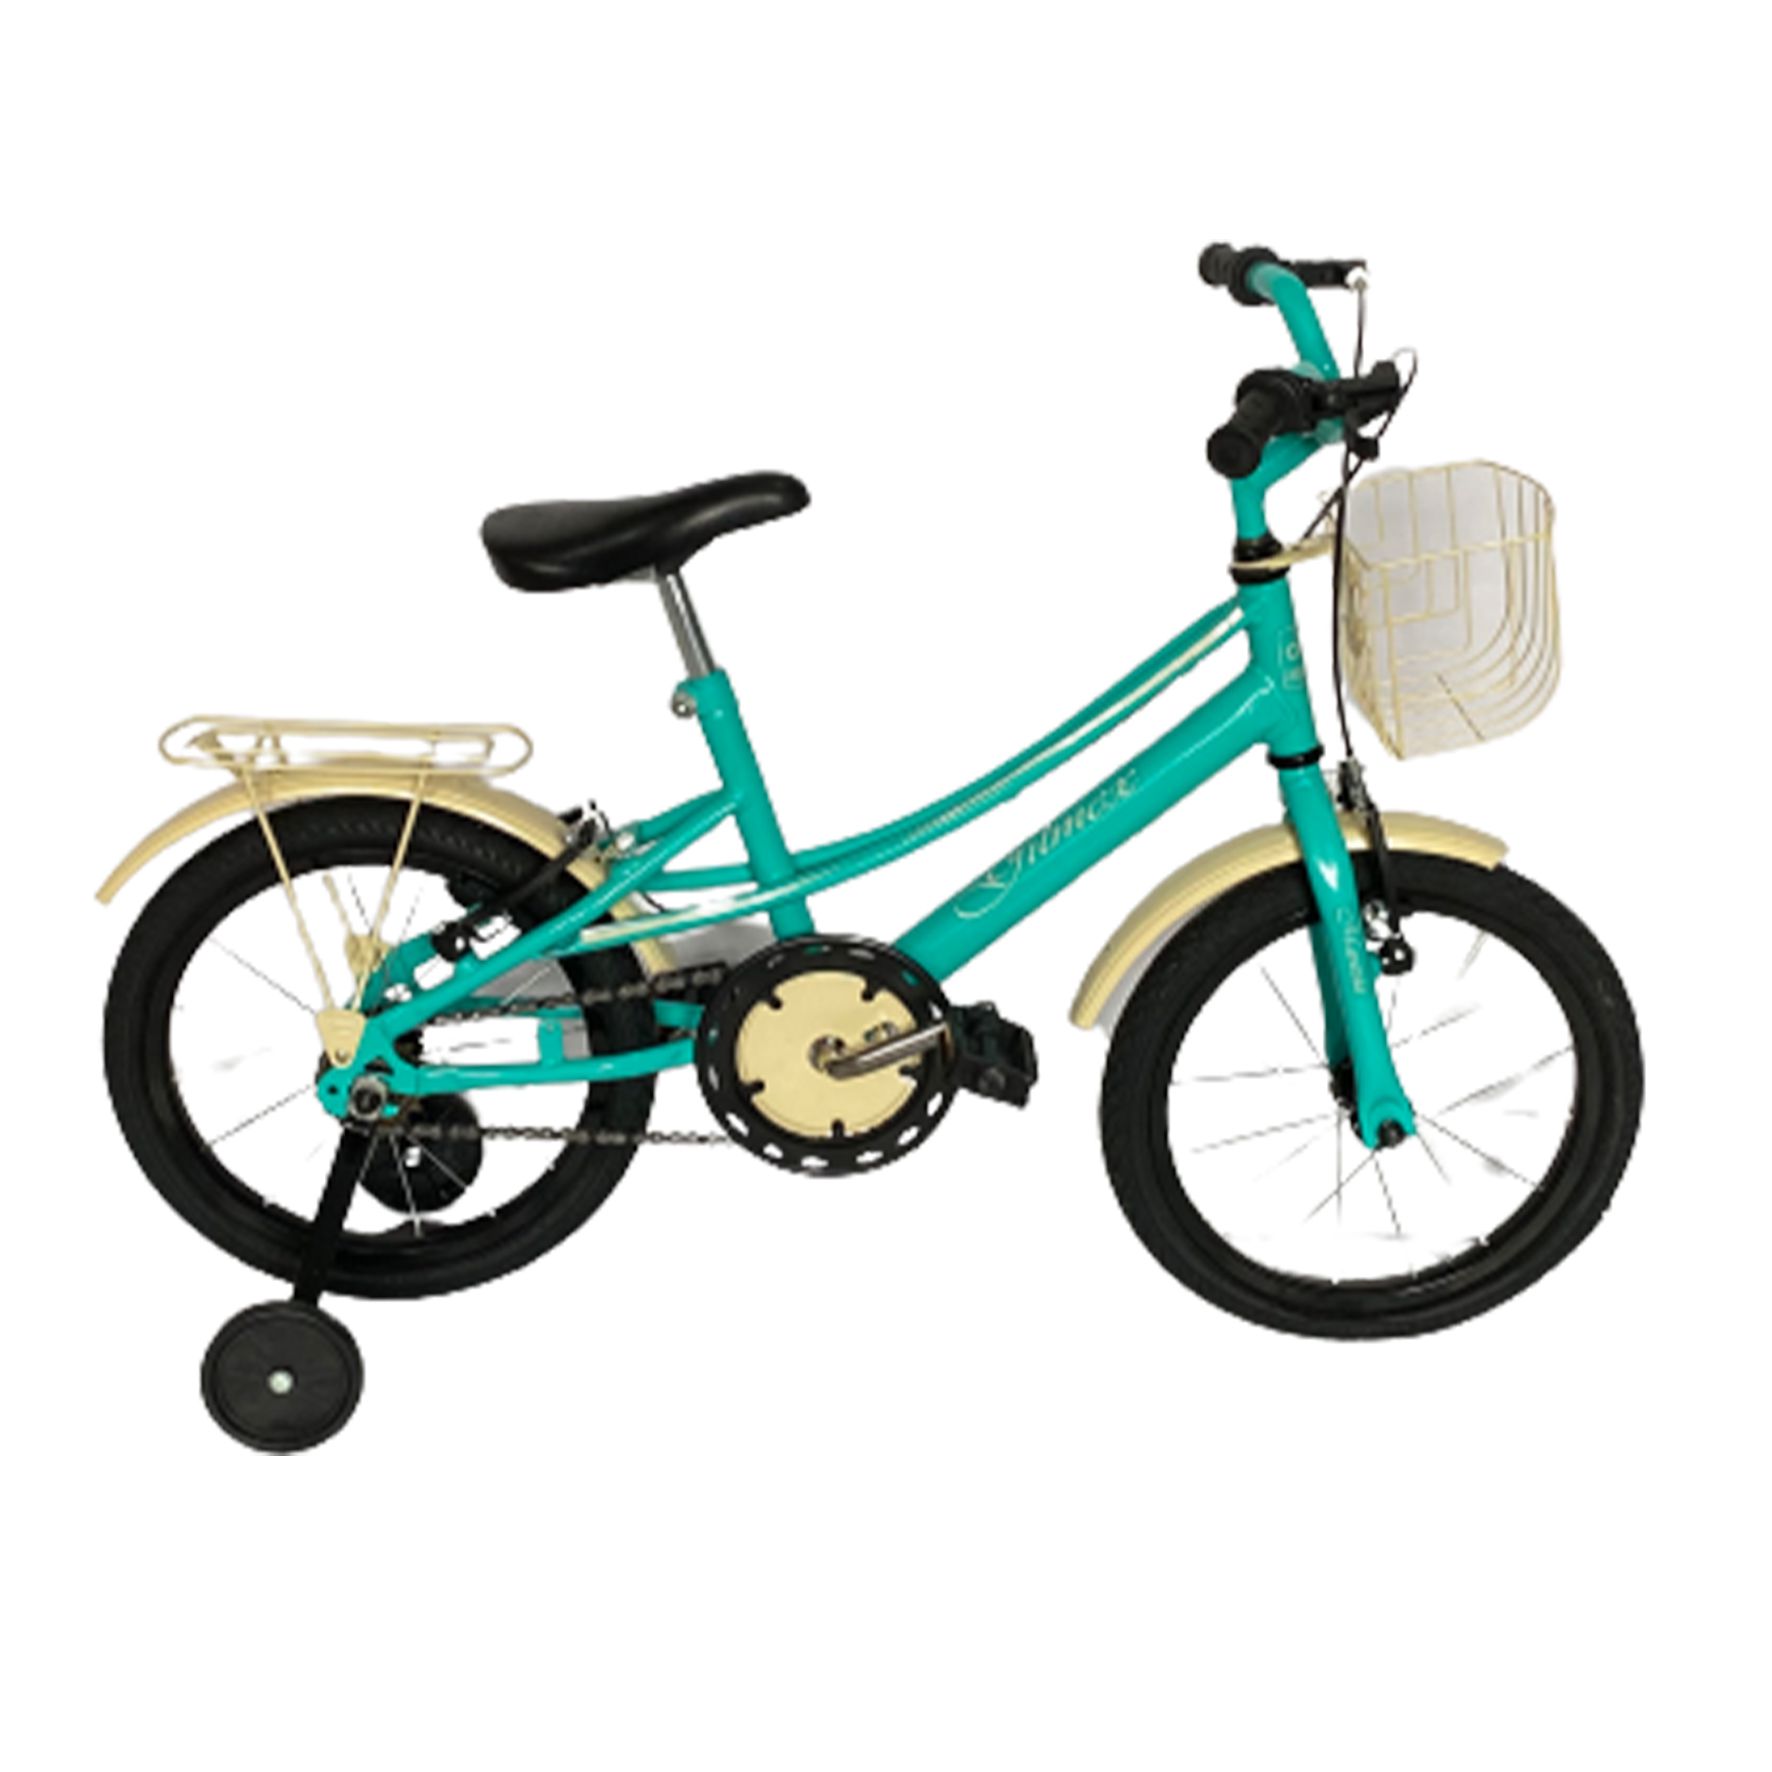 Bcicleta retro infantil aro 16 várias cores - Tag Bike Brasil Distribuidora  Atacado e Varejo